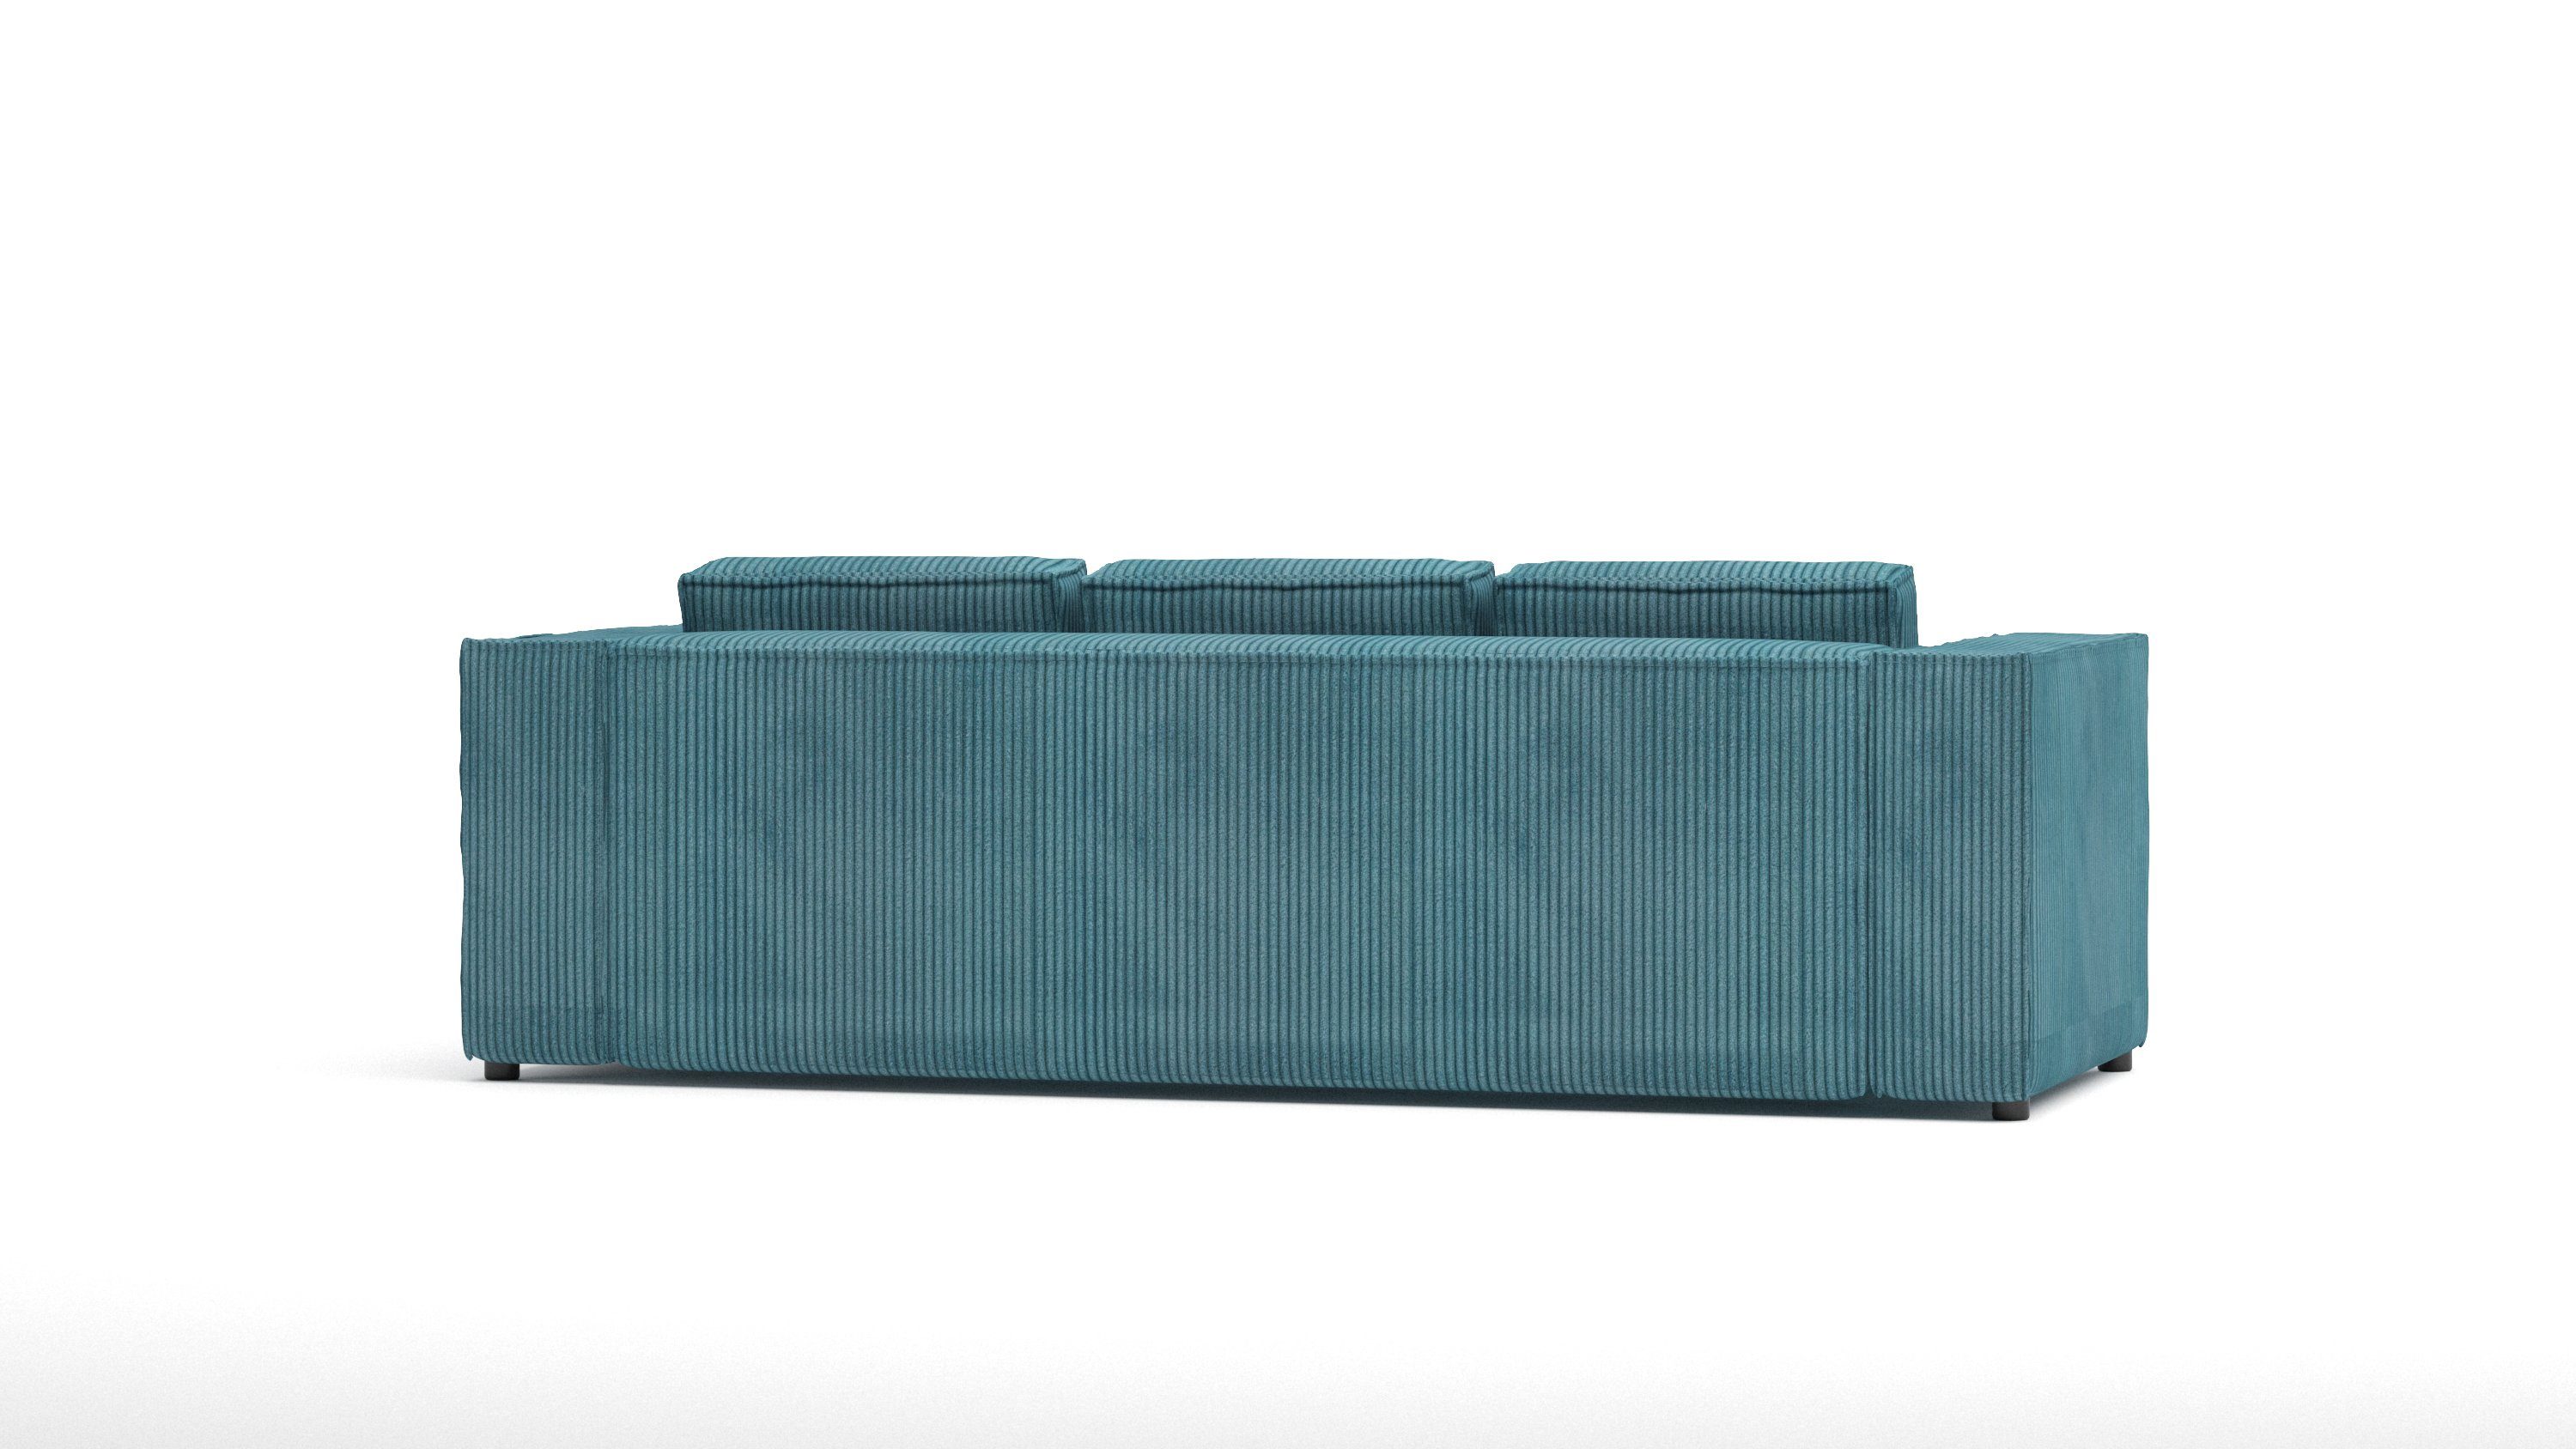 S-Style Möbel 3-Sitzer Cord sofa mit 1 Renne, Wellenfederung Türkis Teile